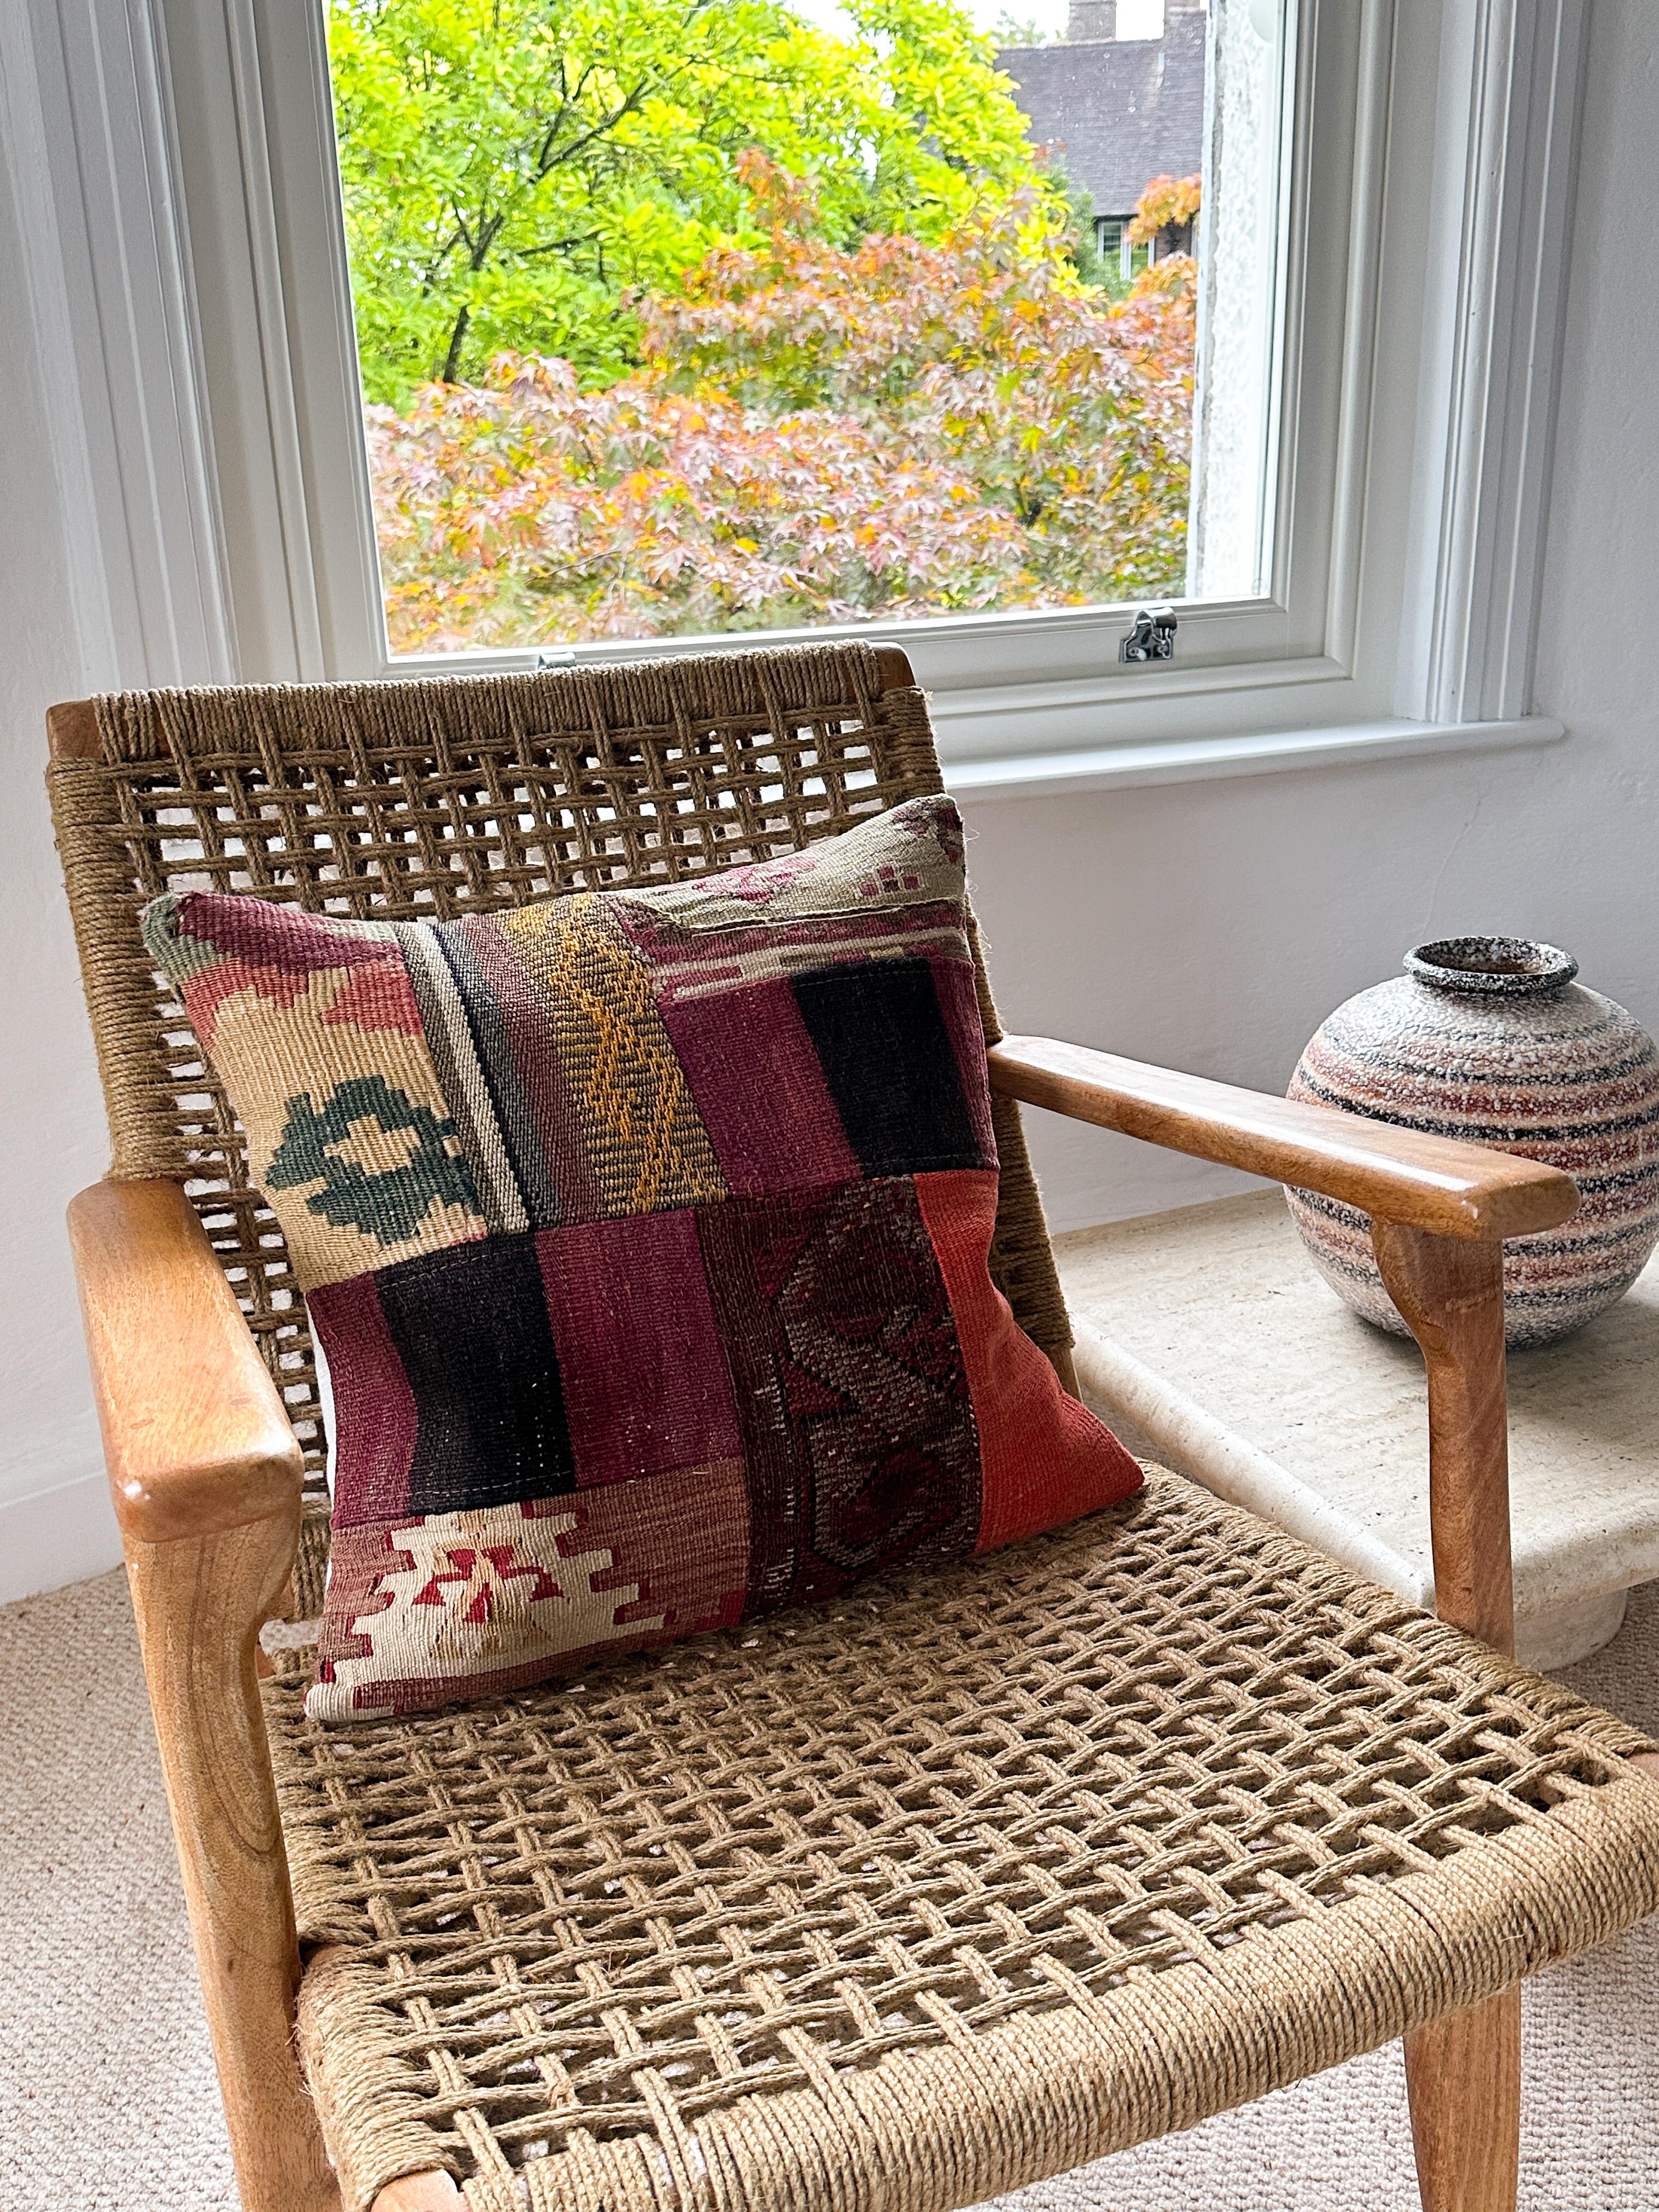 Coussin de luxe créé à partir d'un exquis morceau de tapis kilim vintage combiné à du lin irlandais par la créatrice irlandaise Katie Larmour. Unique en son genre. 

Dans des rayures riches, chaudes et spectaculaires de rouge rouille orangé et de